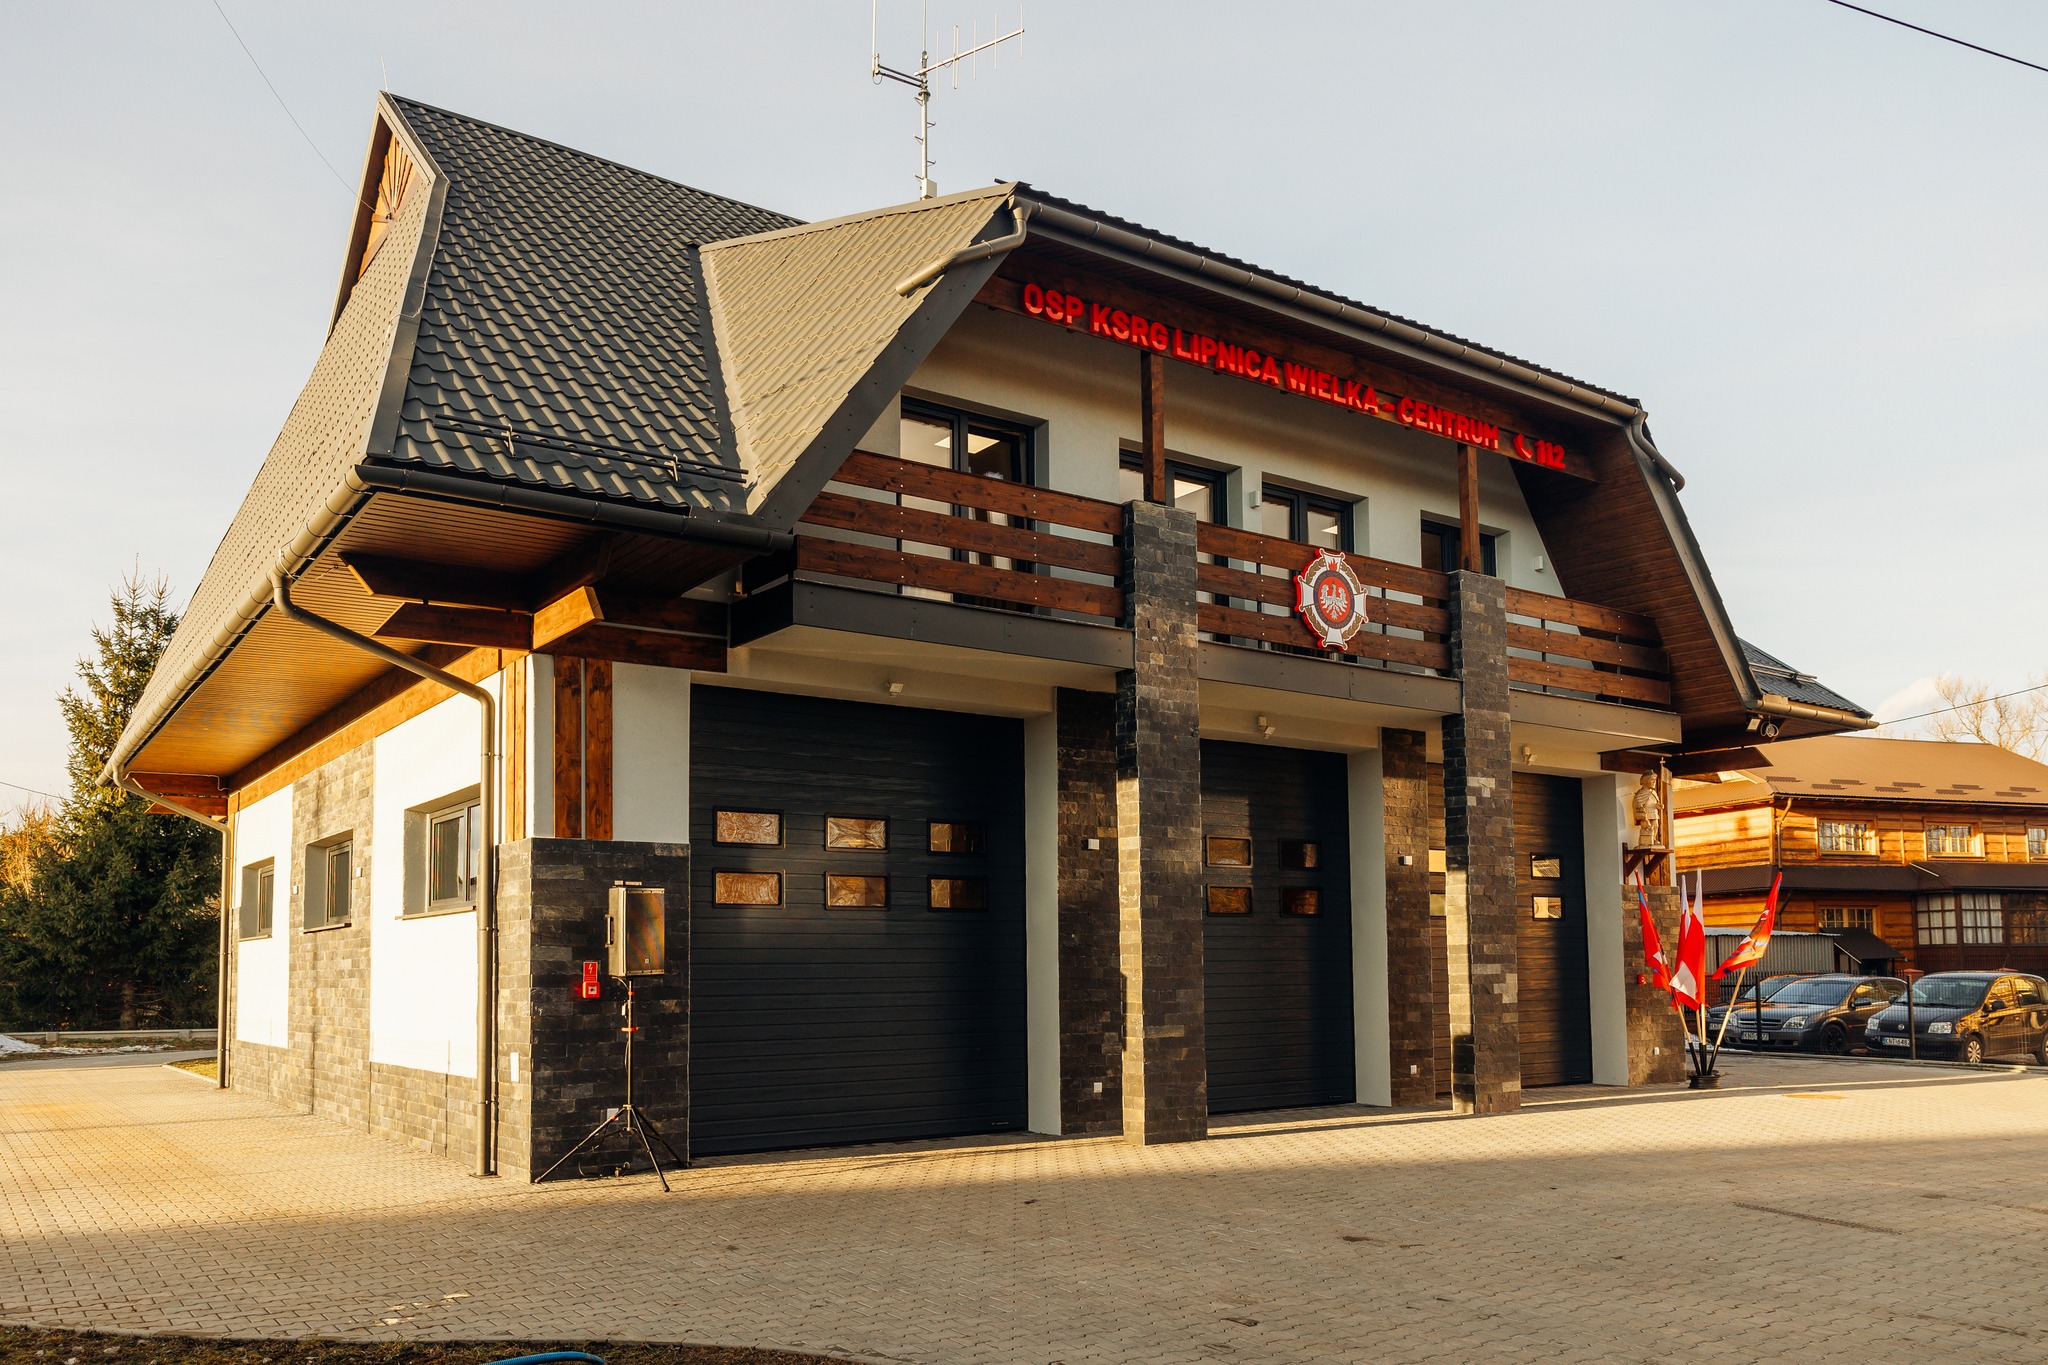 Otwarcie nowej remizy Ochotniczej Straży Pożarnej w Lipnicy Wielkiej - Centrum